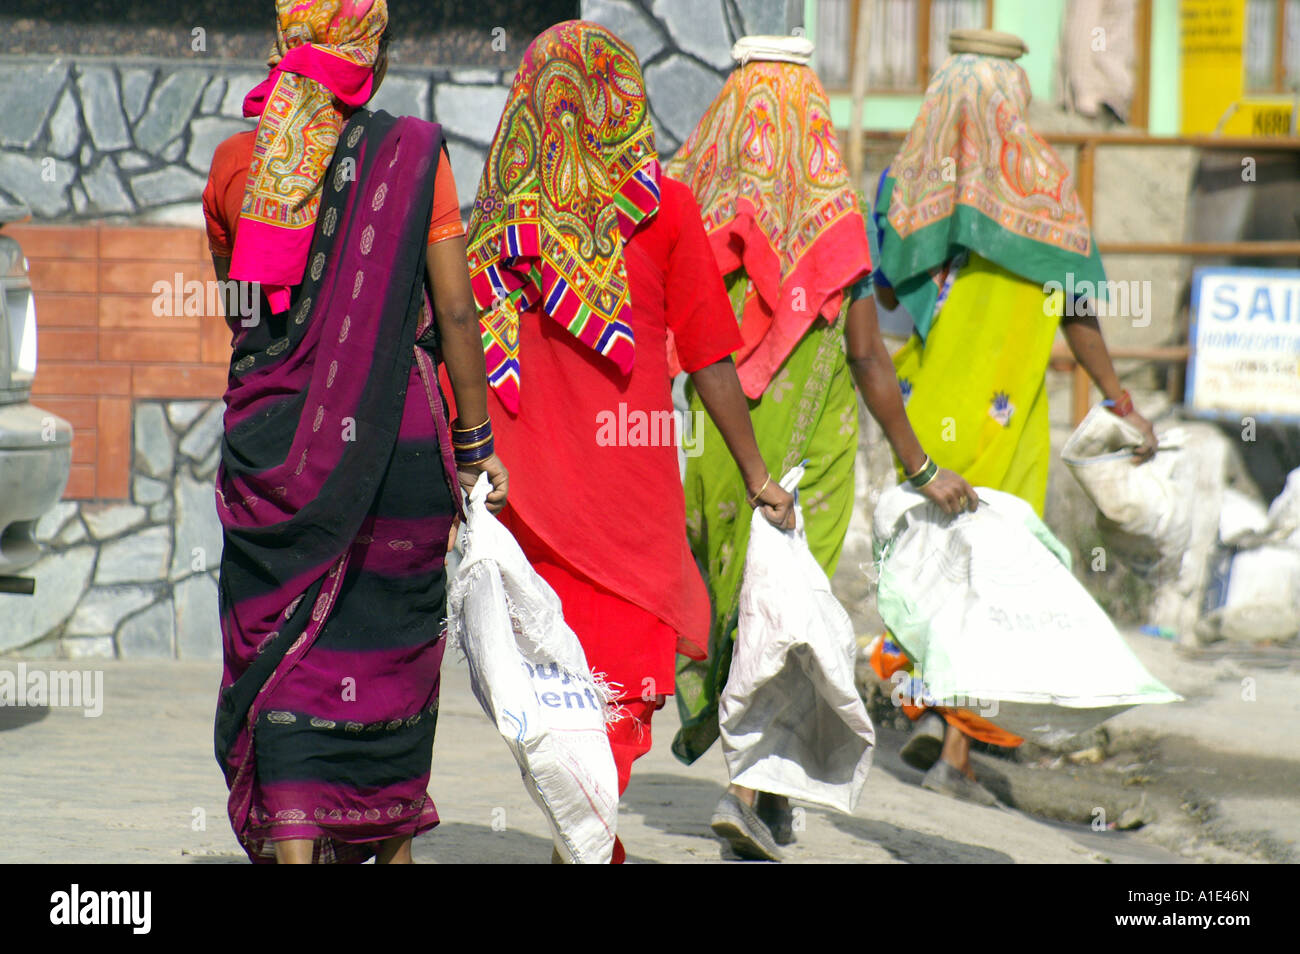 Quatre de l'équipe femmes indiennes en sari coloré travaillant dur transportant des sacs de sable vide au site de construction de la rue, de l'Inde Banque D'Images